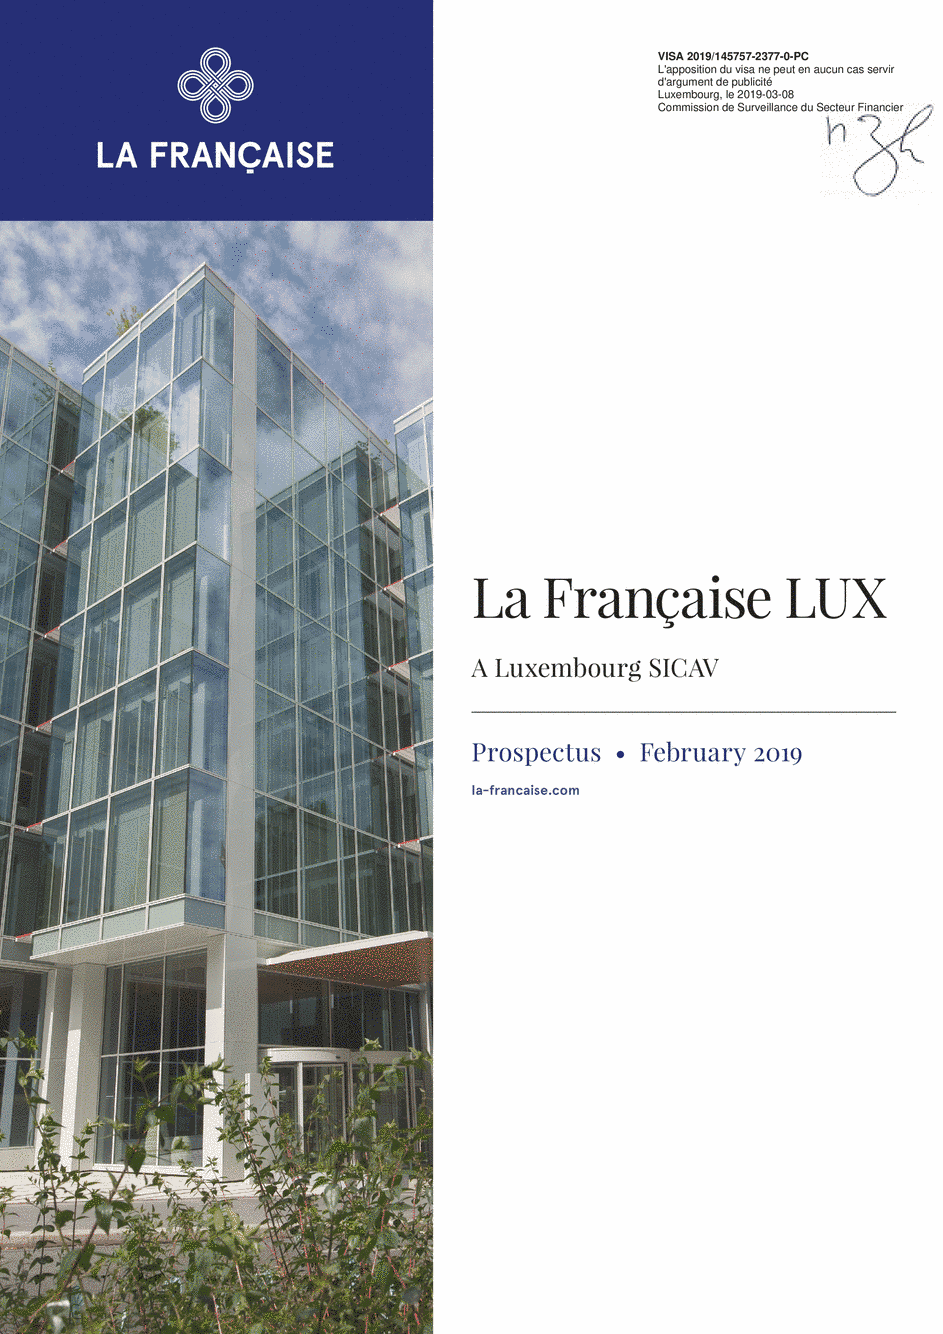 Prospectus La Française LUX - Forum Global Real Estate Securities - R (D) EUR - 01/12/2018 - English